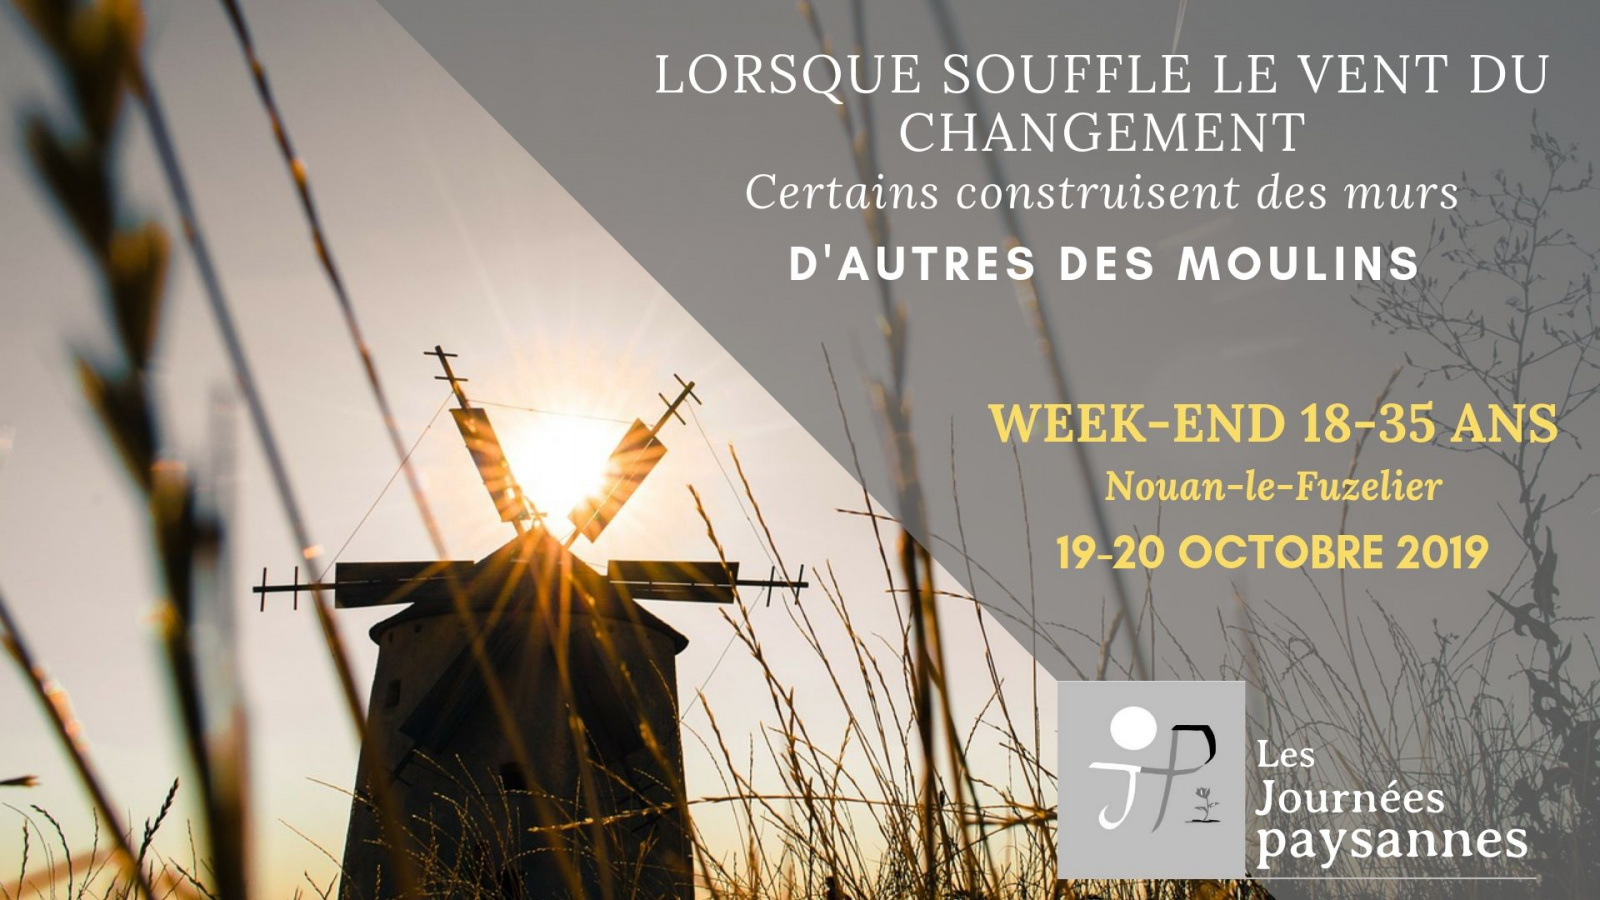 Week-end 18-35 ans des Journées paysannes les 19 & 20 octobre 2019 à Nouan-le-Fuzelier (41)